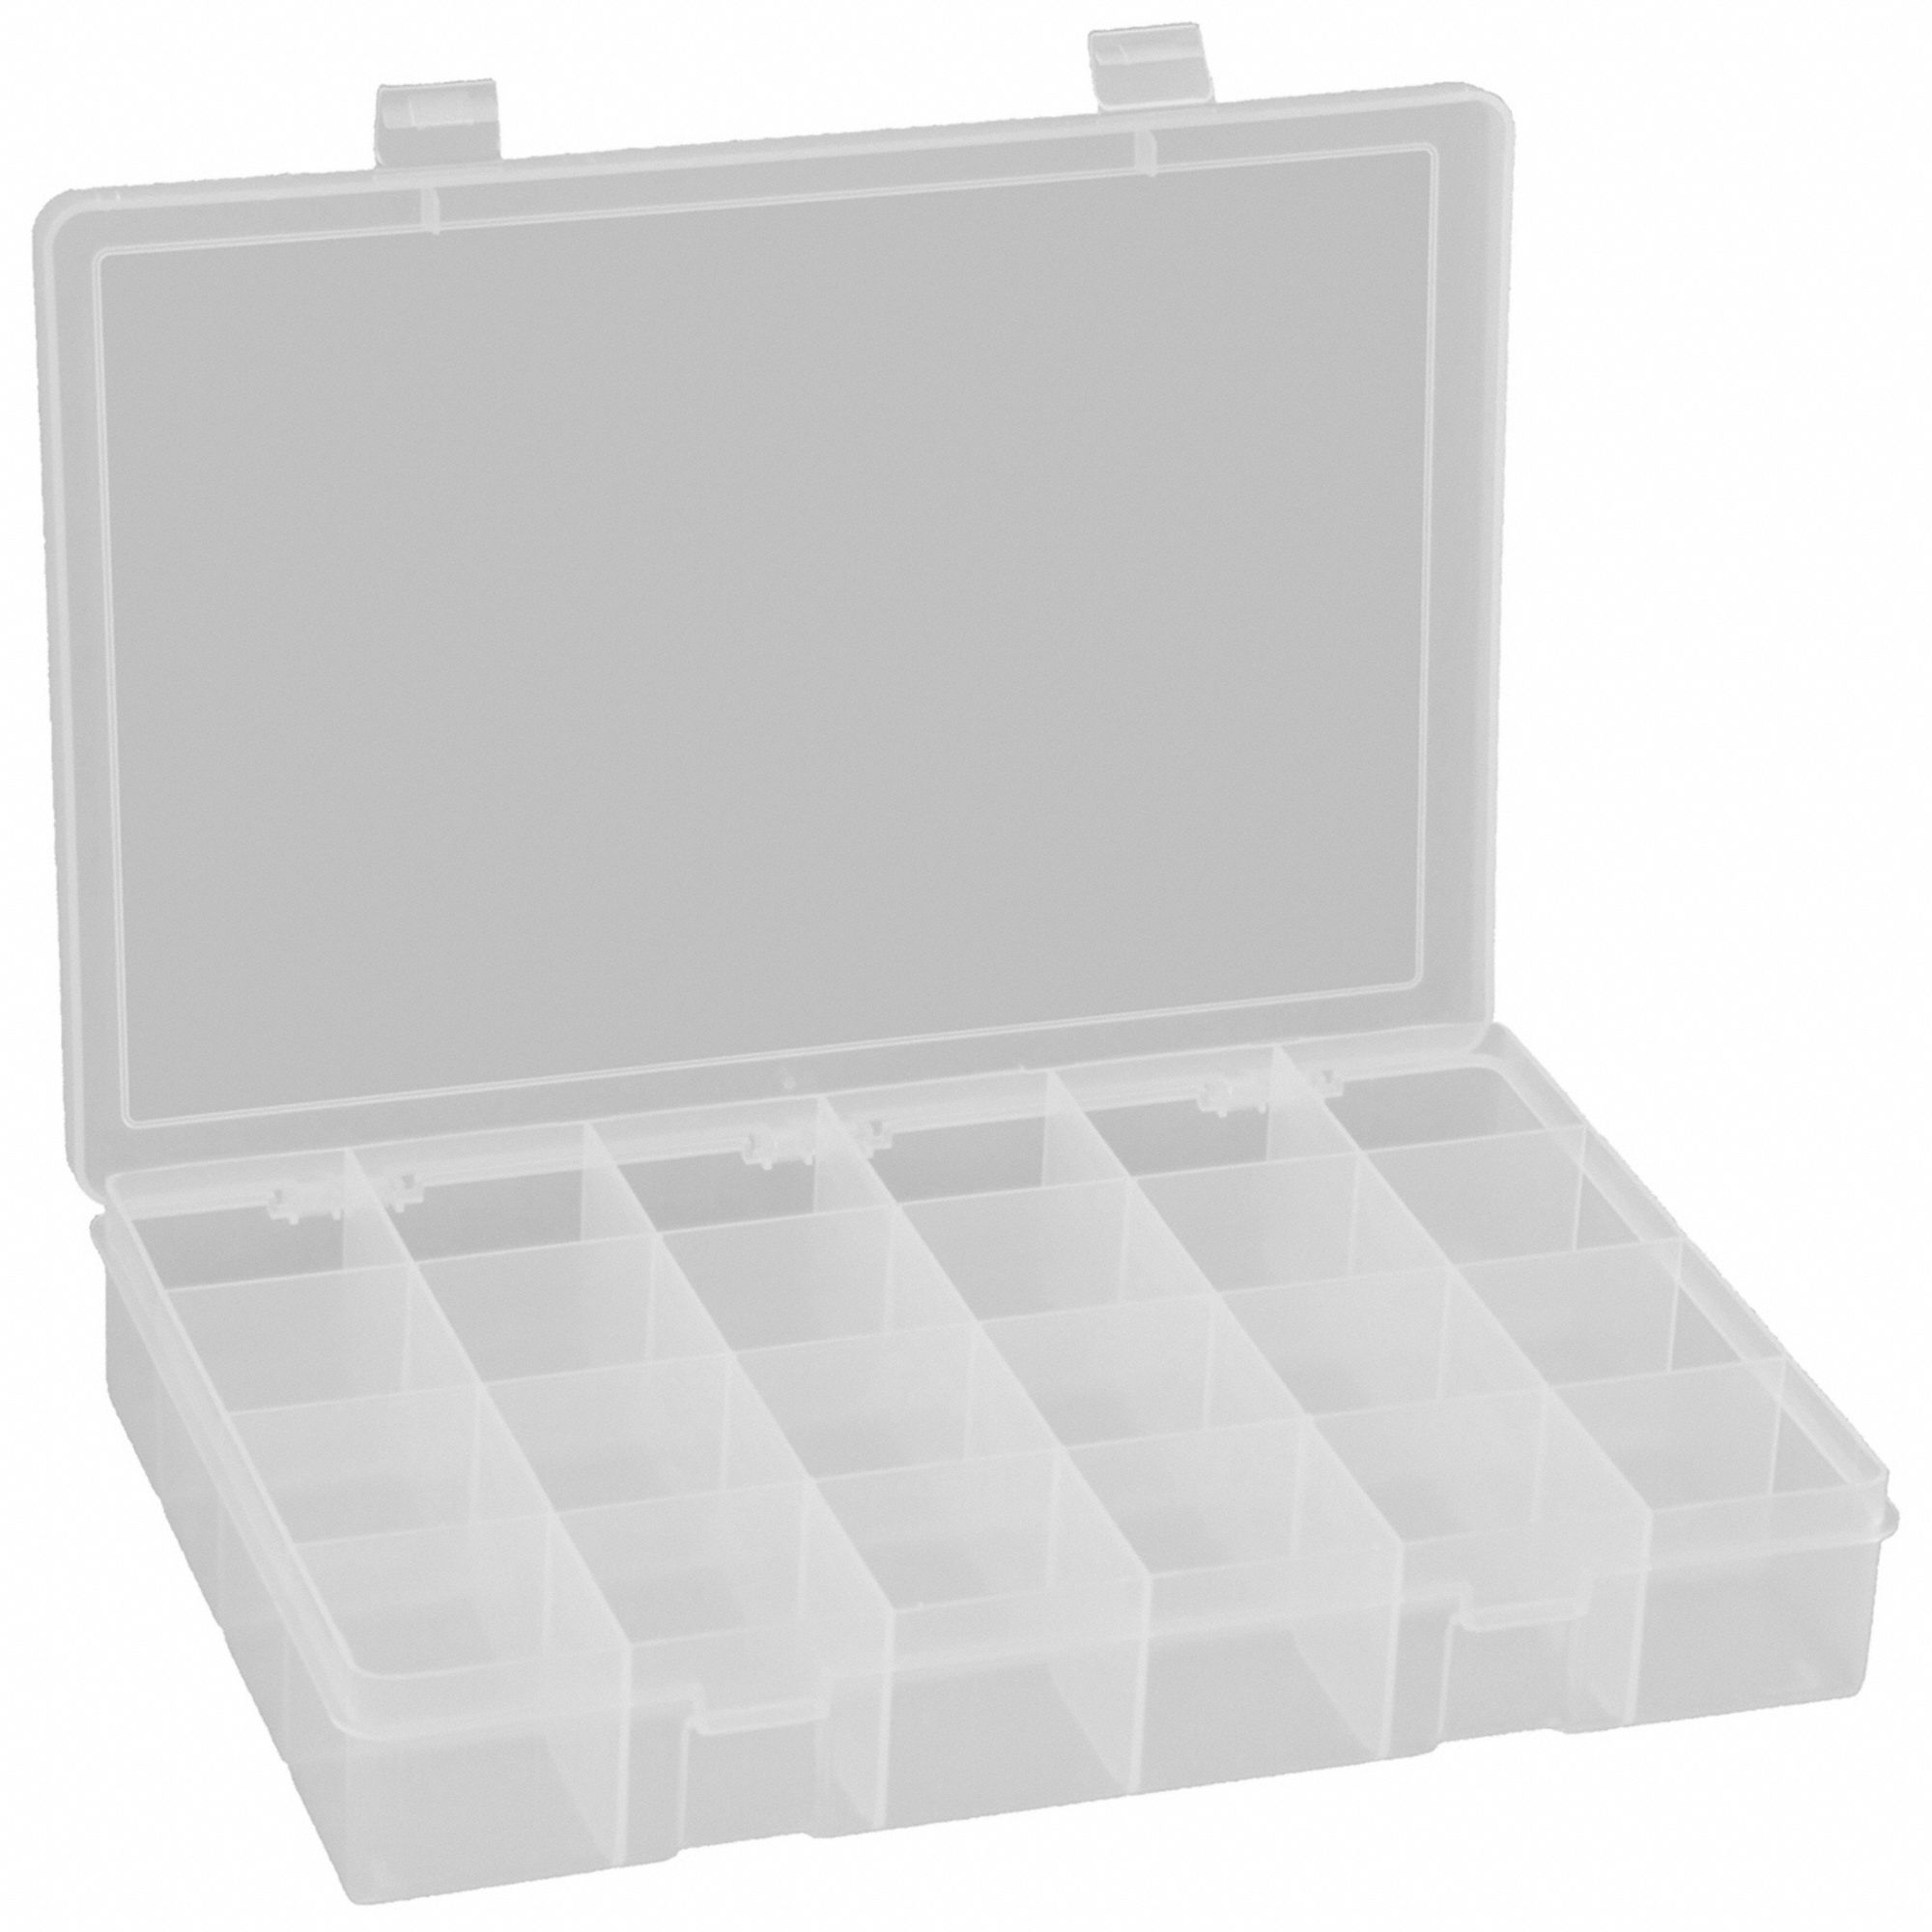 DURHAM Caja de Compartimentos - 18x12x3 - (6) Compartimentos Verticales -  Con Divisores Fijos - Lote de 4